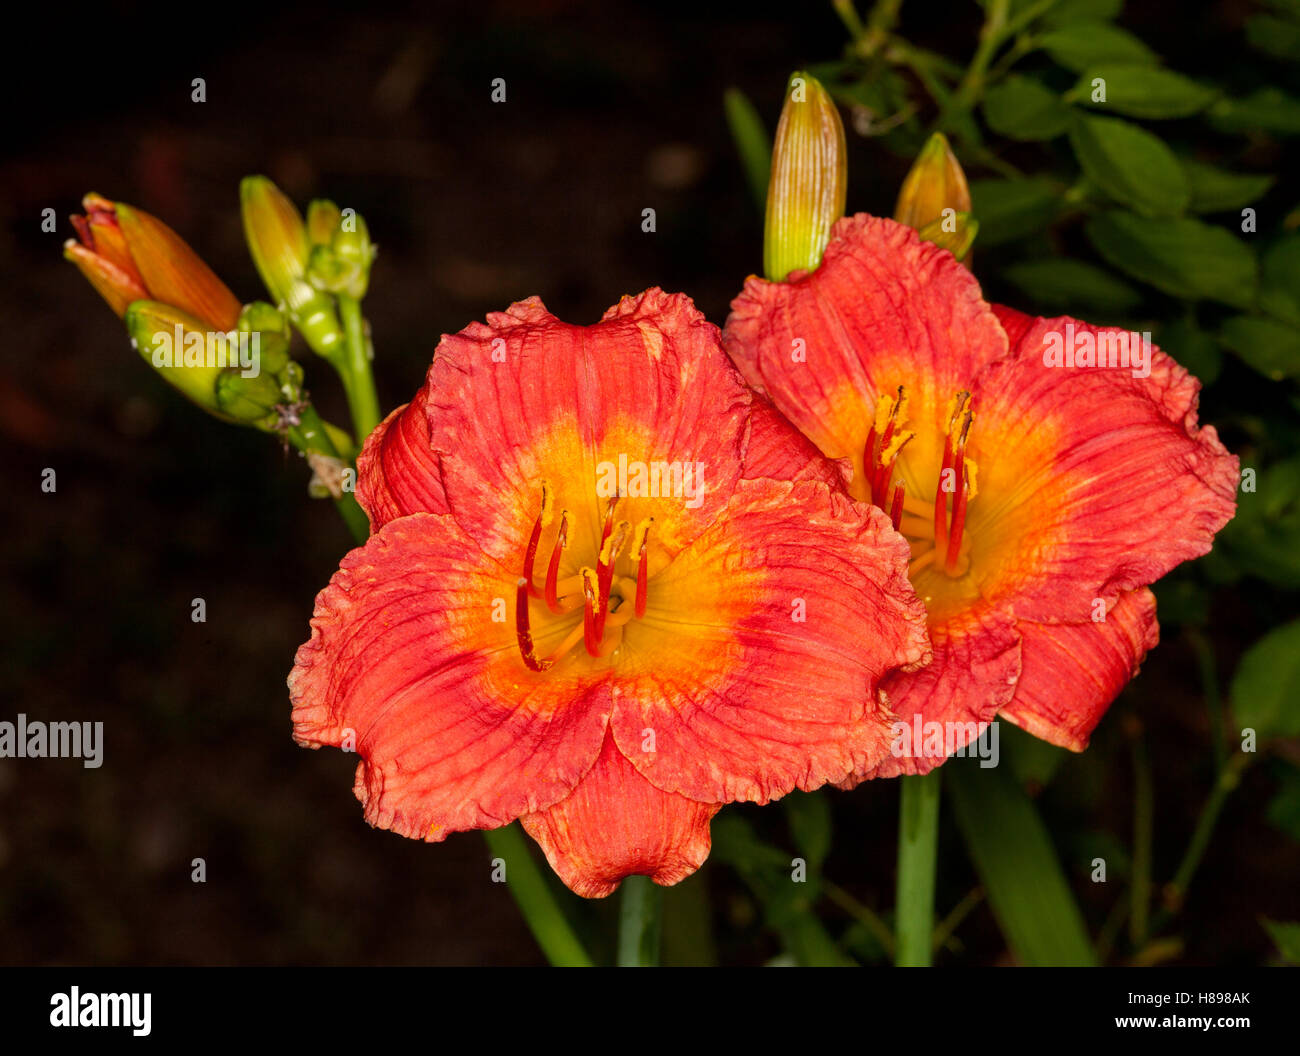 Deux spectaculaires profonde éclatantes fleurs orange/rouge orange plus léger avec la gorge et les bourgeons de l'hémérocalle 'Belle' Bangkok sur fond noir Banque D'Images